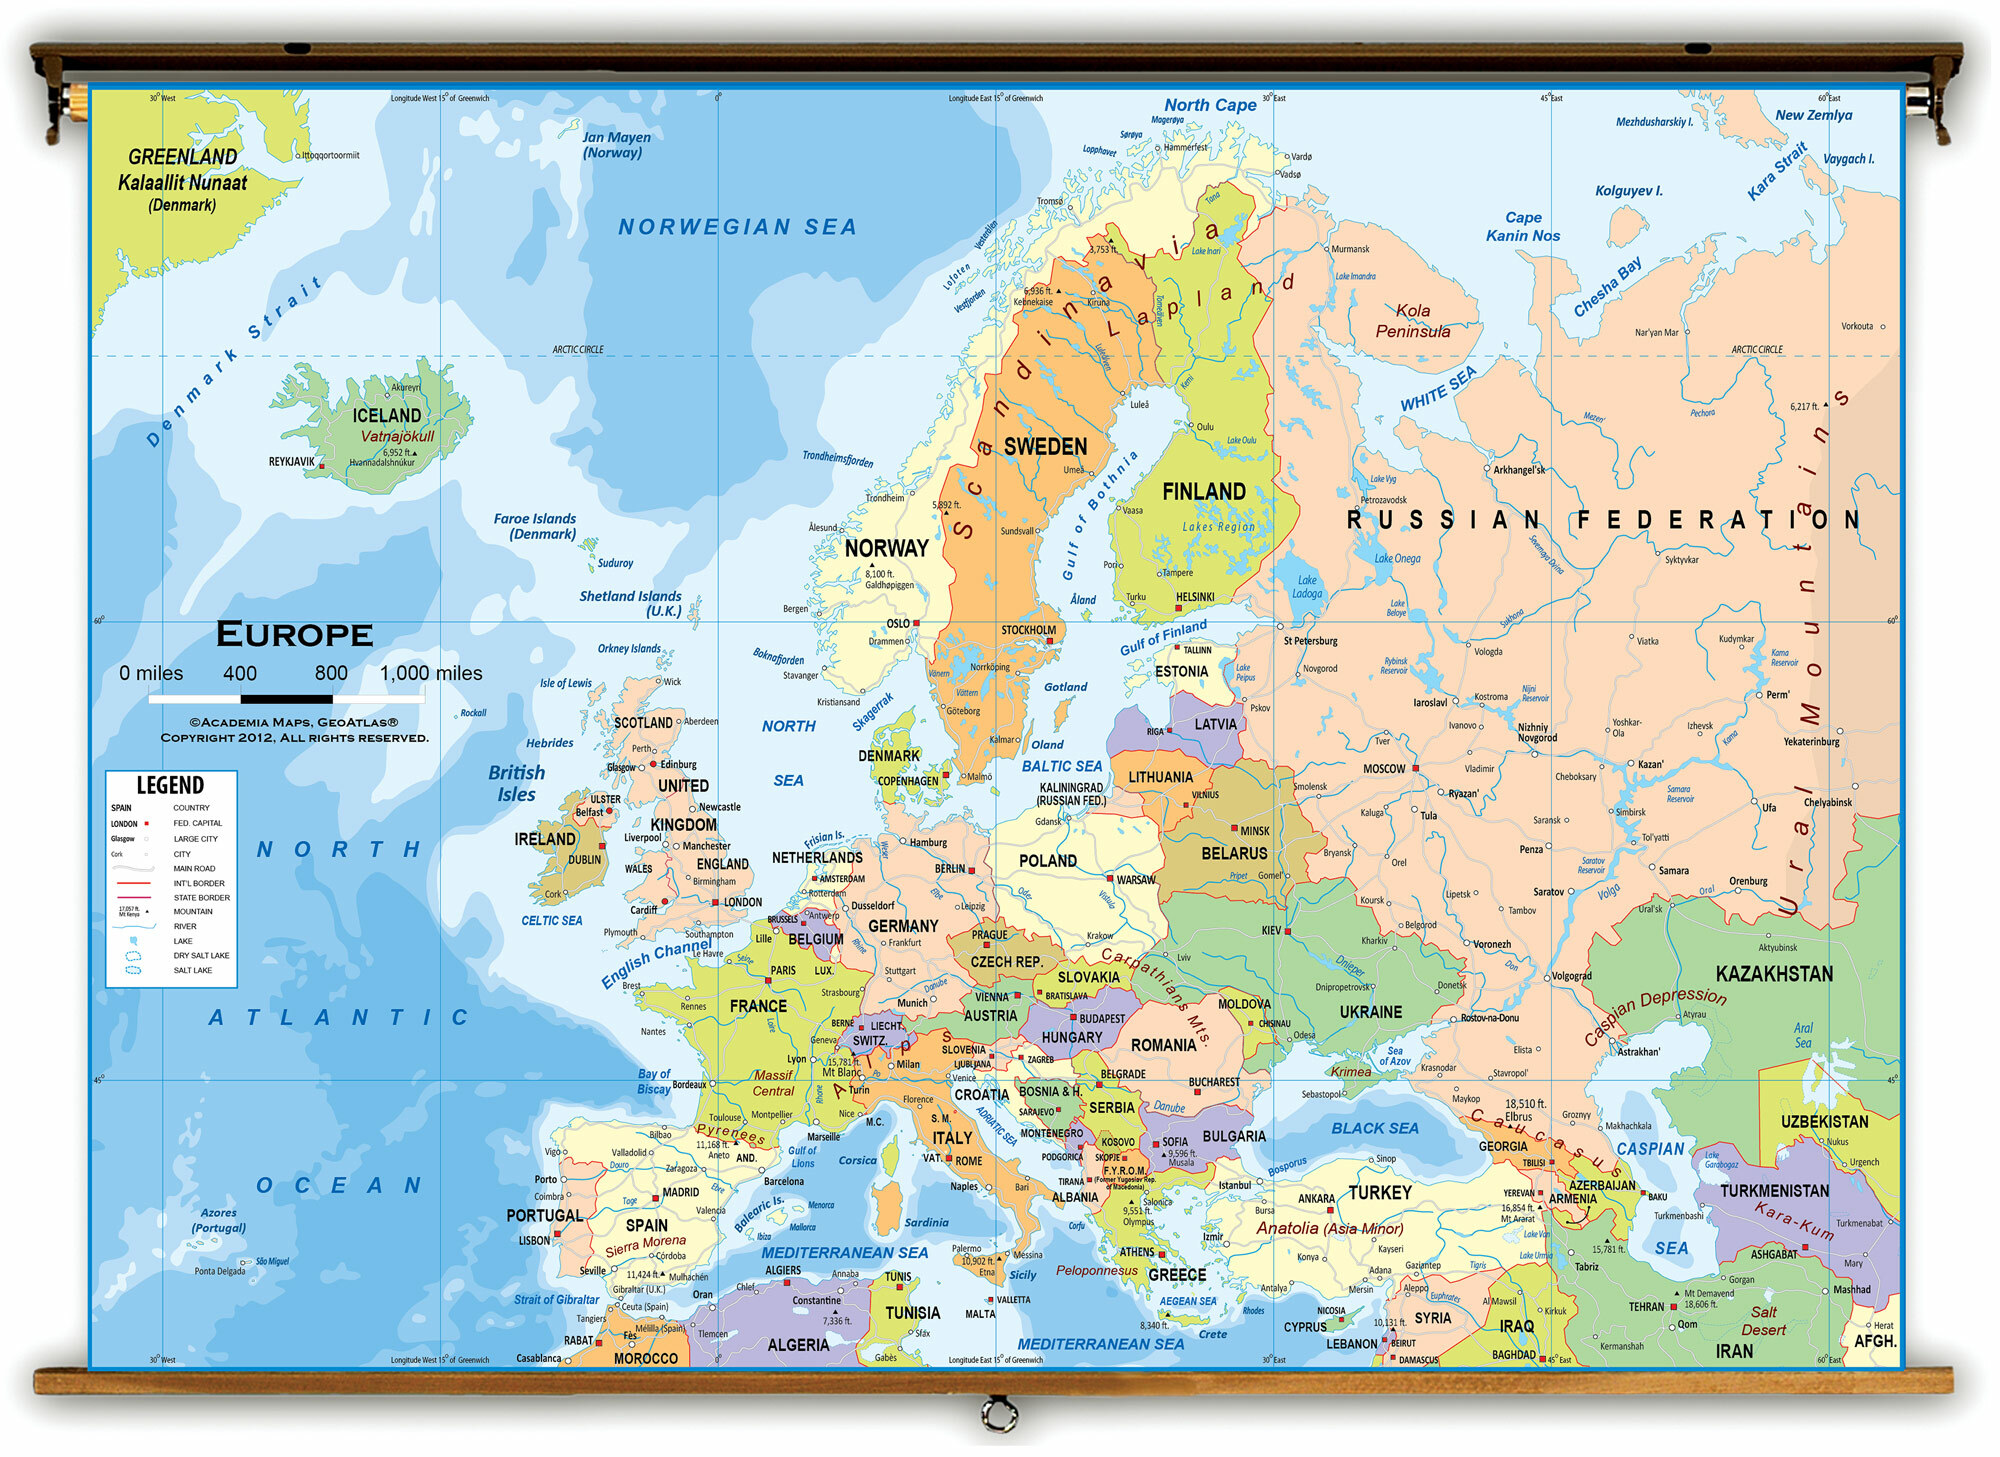 Chào mừng đến với bản đồ Châu Âu 2024 được viết bằng tiếng Việt! Bạn sẽ được khám phá châu lục này thông qua ngôn ngữ quen thuộc của mình. Tận hưởng sự dễ hiểu và tiện lợi khi tìm kiếm những địa danh và thông tin mới nhất về Châu Âu.